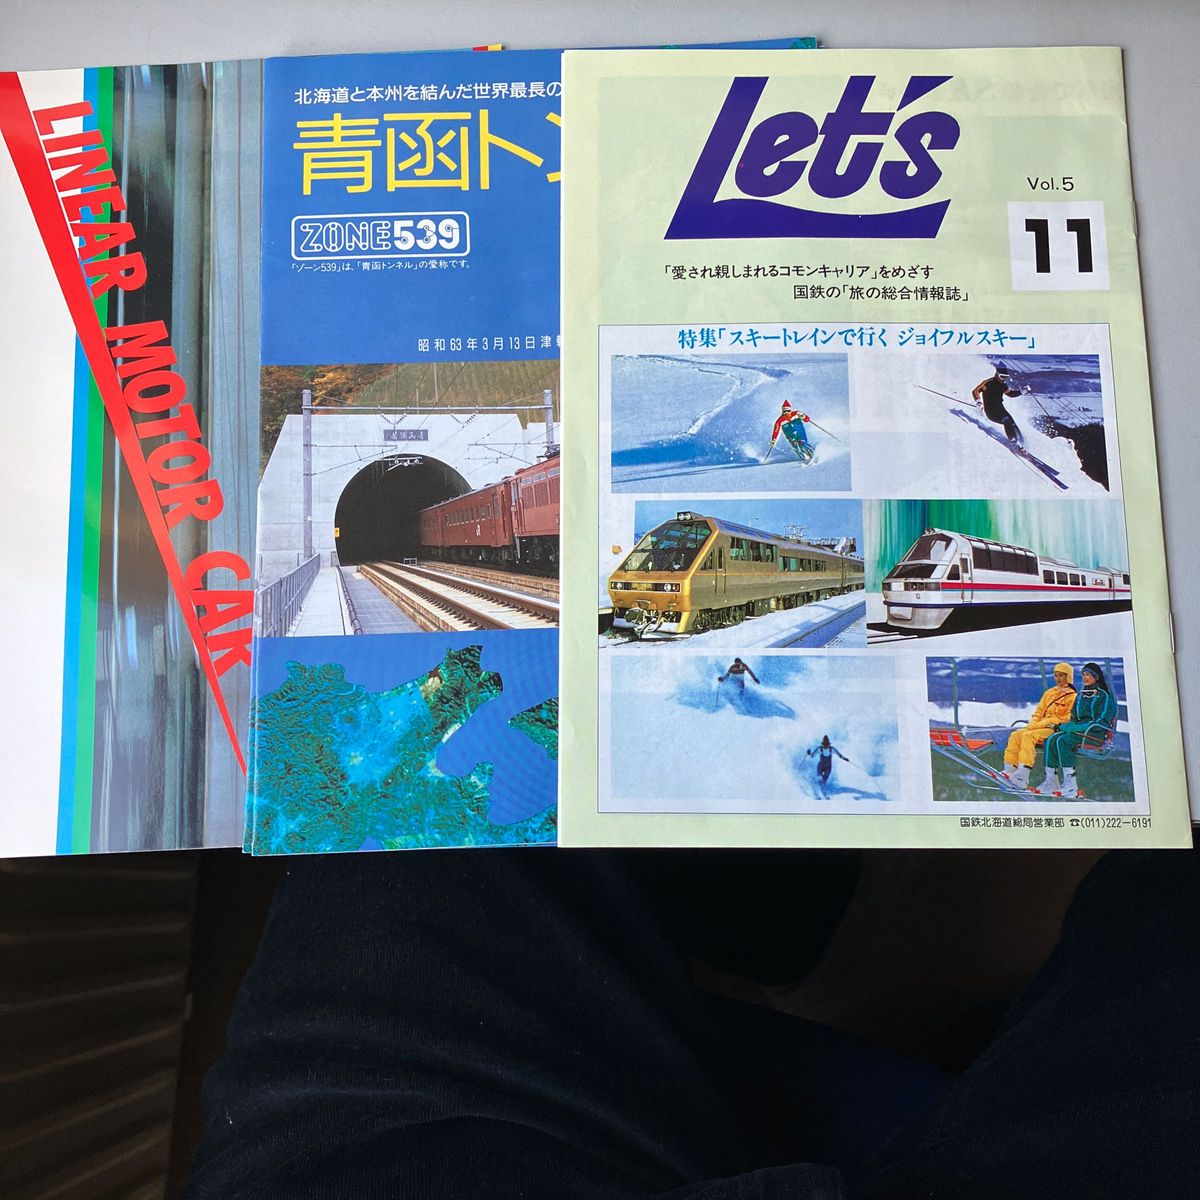 鉄道コレクションで青函トンネルのリーフレット2部と国鉄が発行していたスキートレインの情報誌などグッズです。